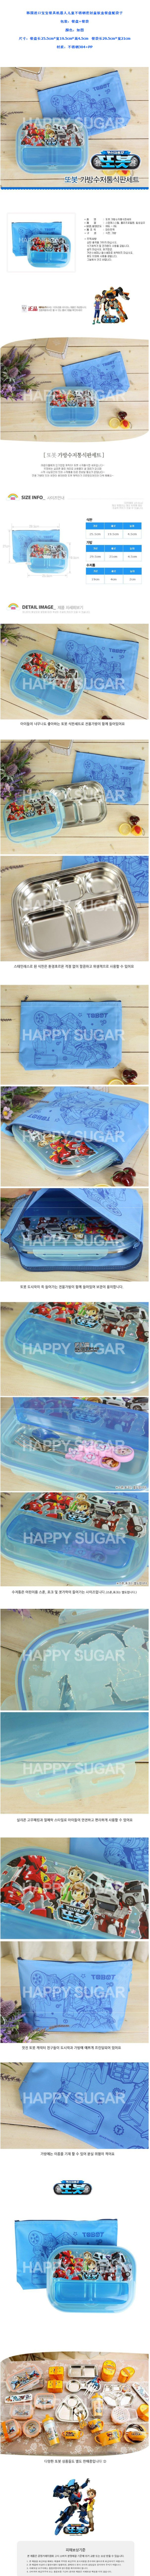 韩国进口宝宝餐具机器人儿童不锈钢密封盖饭盒配袋子微波炉餐盒043322